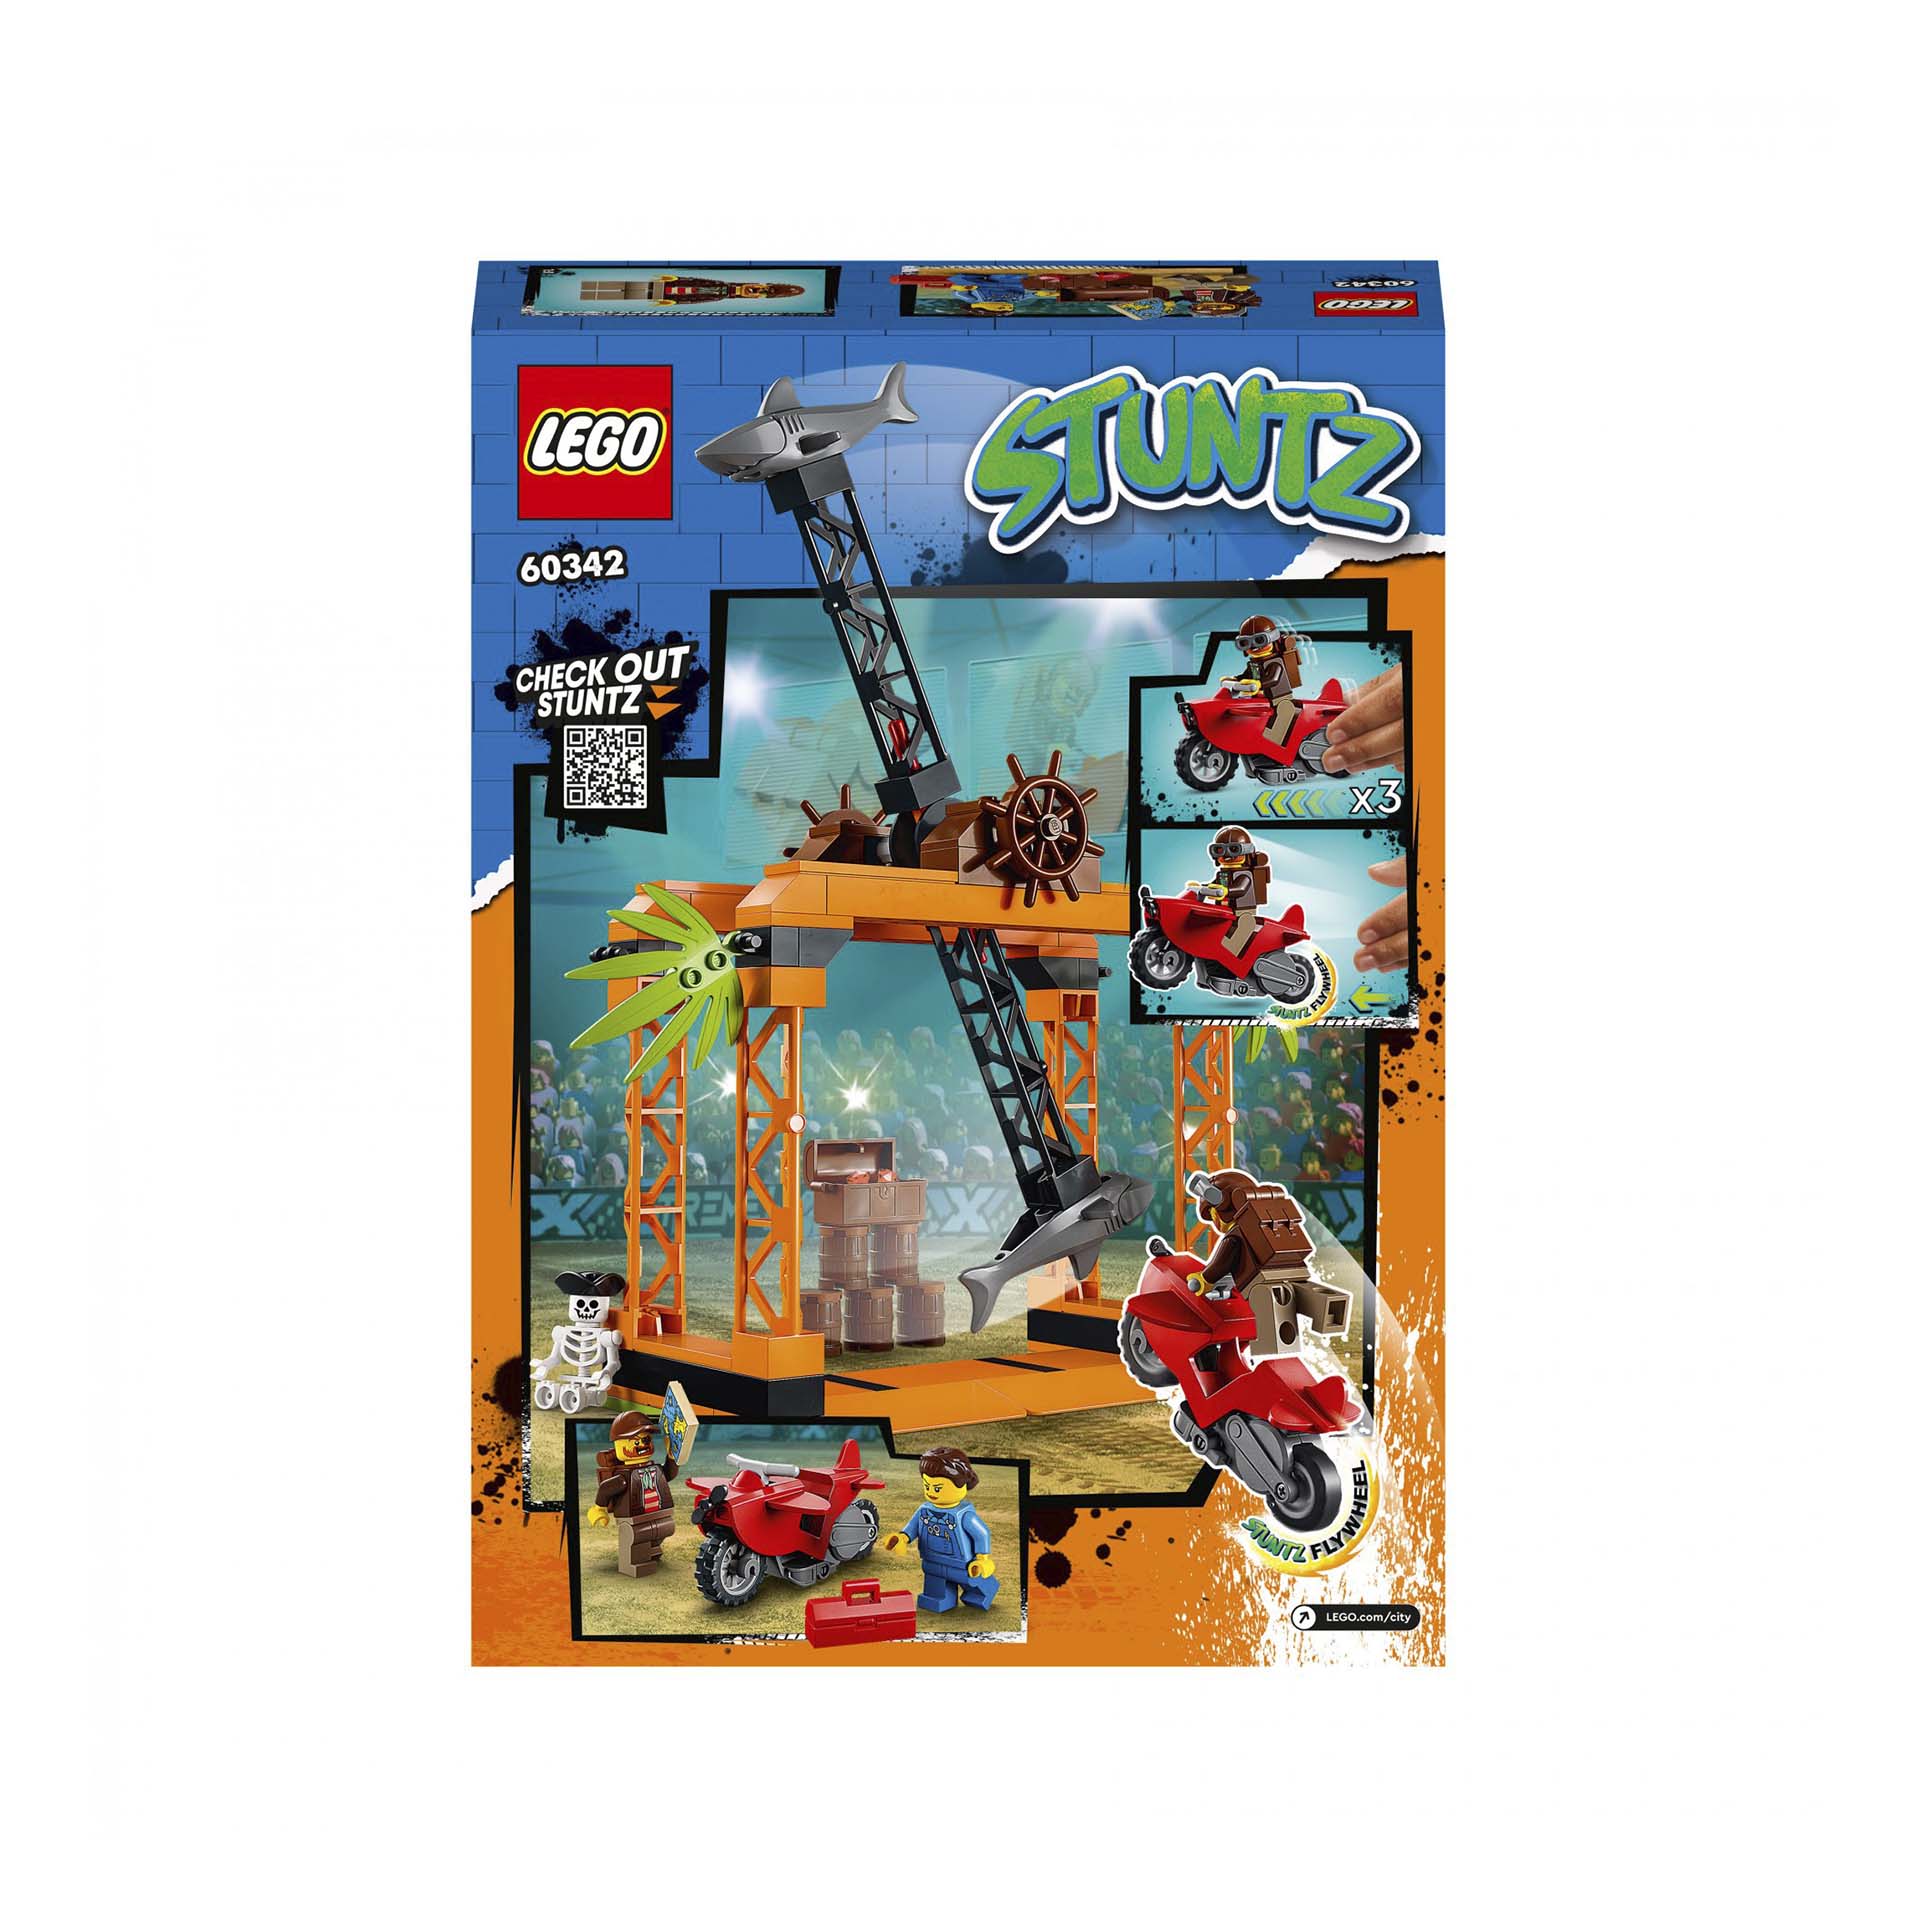 LEGO City Stuntz Sfida Acrobatica Attacco dello Squalo, Moto Giocattolo con Mini 60342, , large